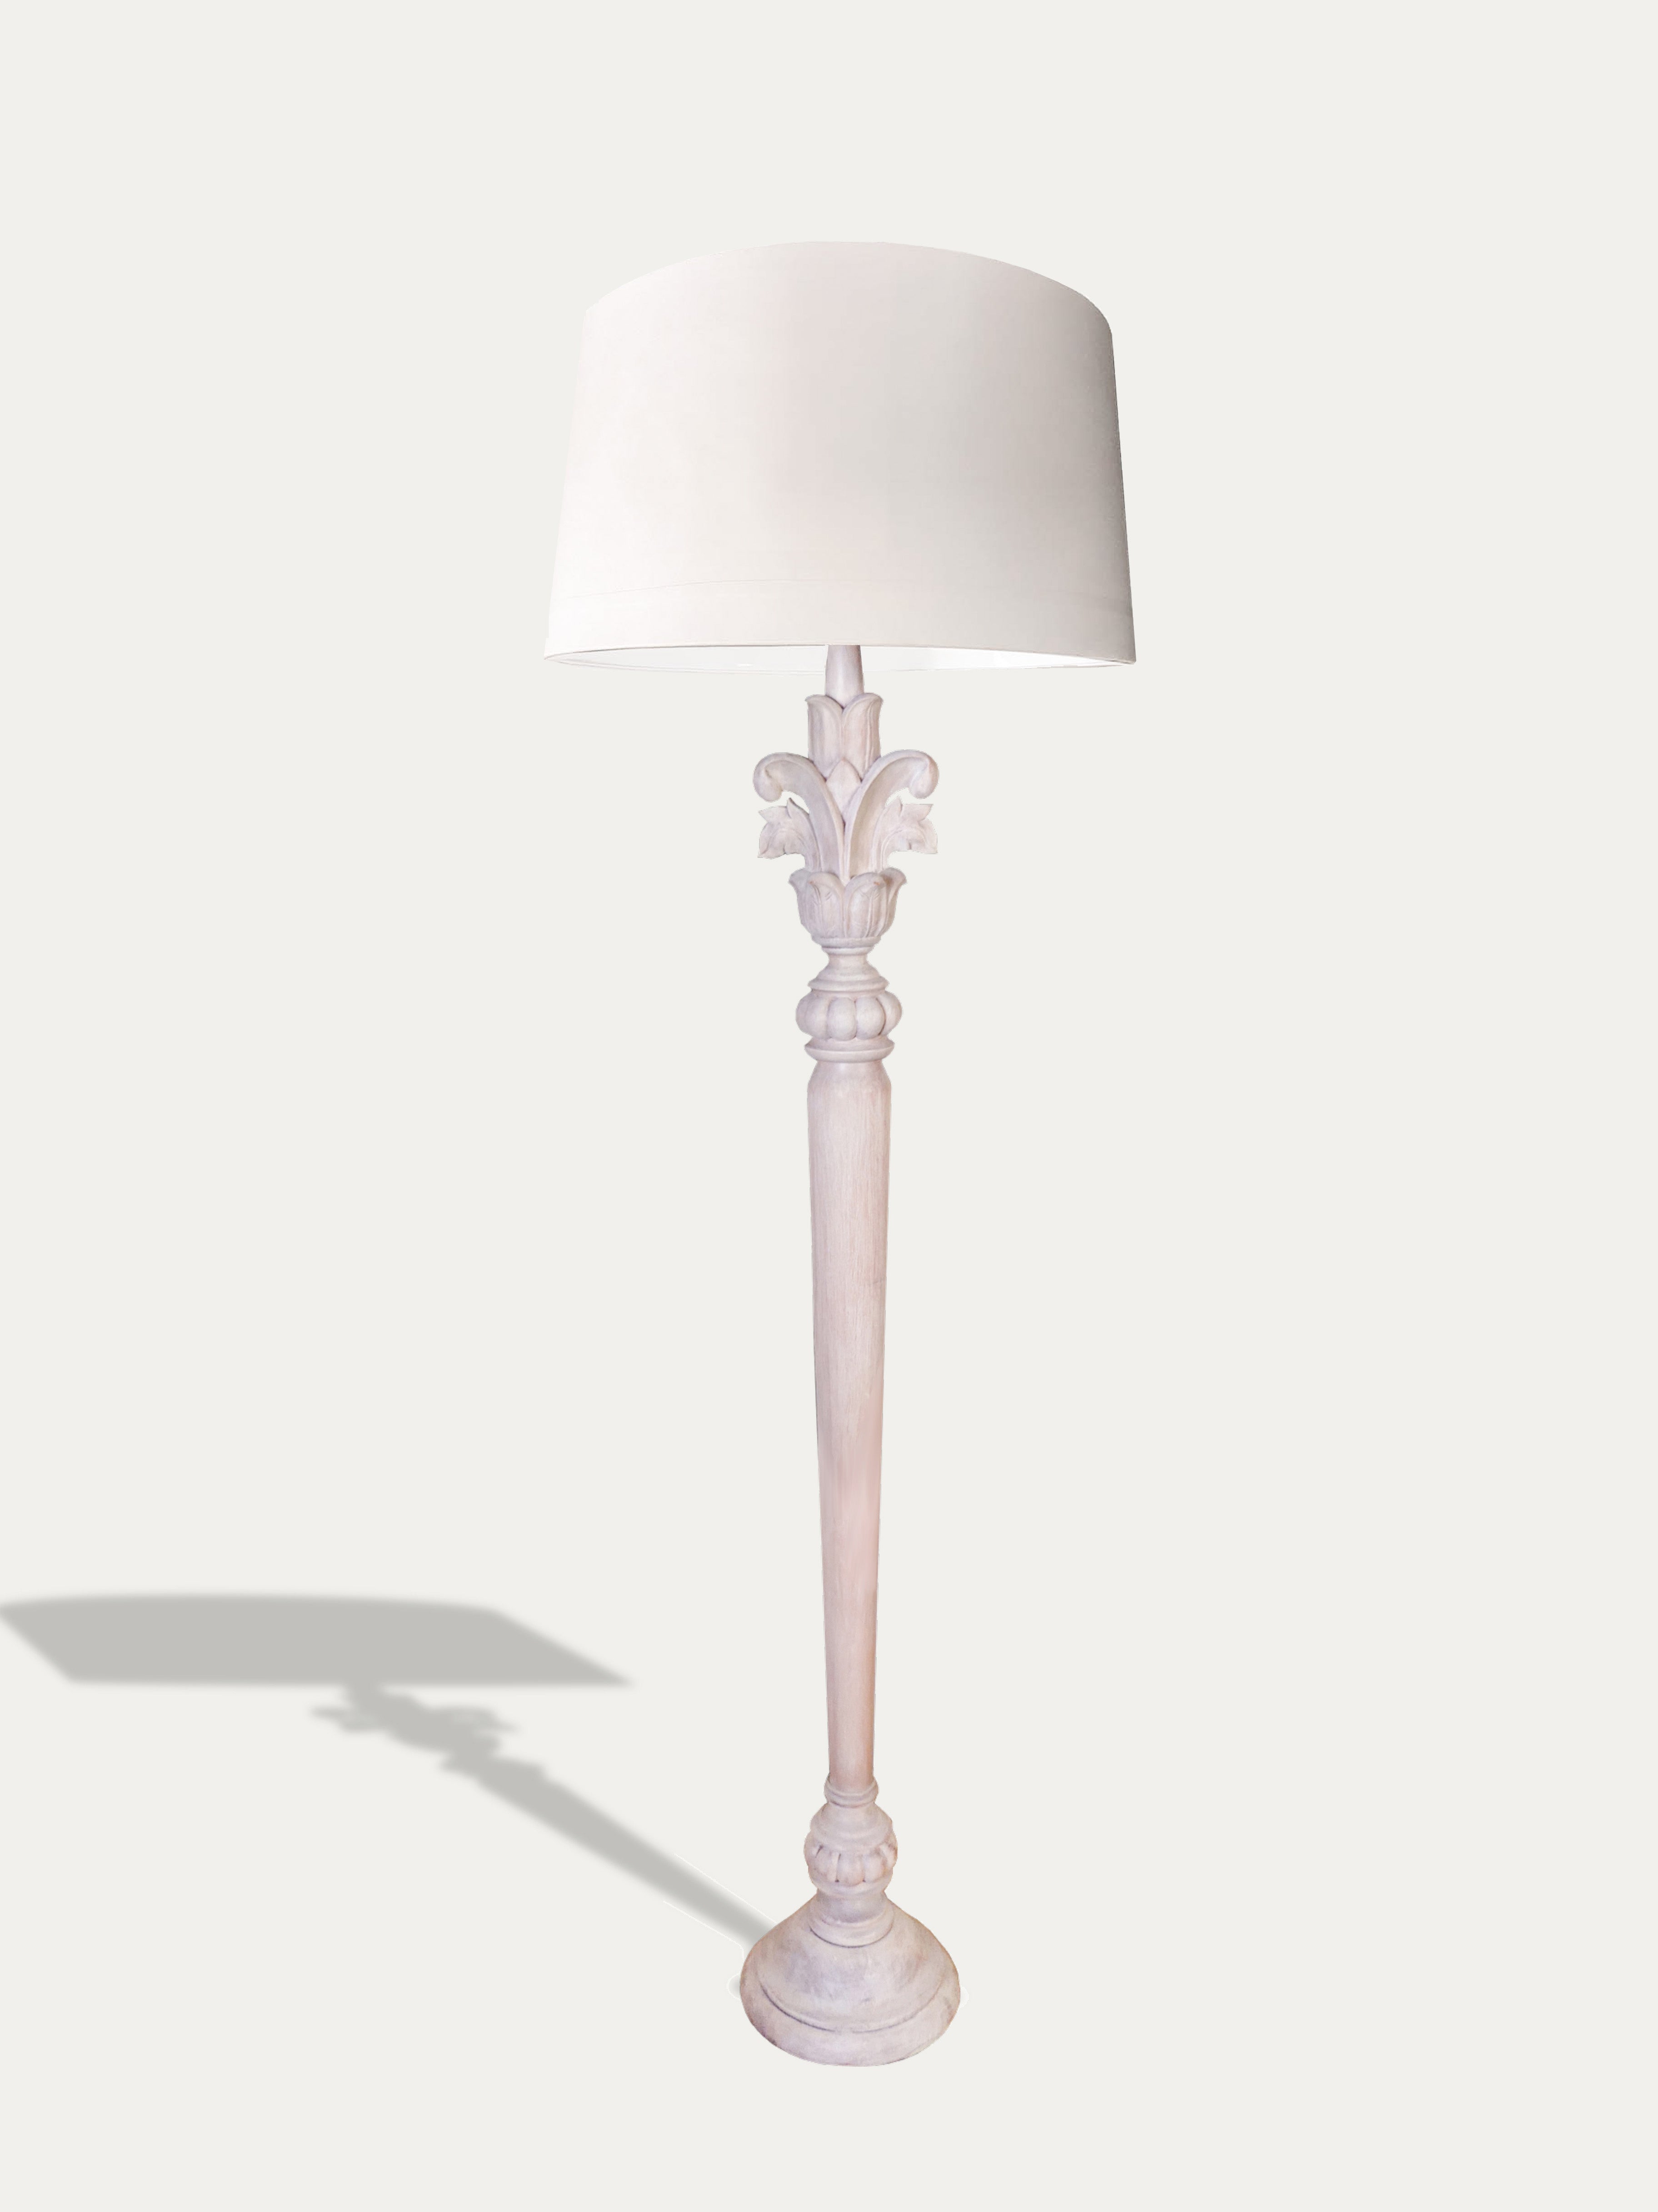 Botanica - Handmade Floor Lamp from Kirschon